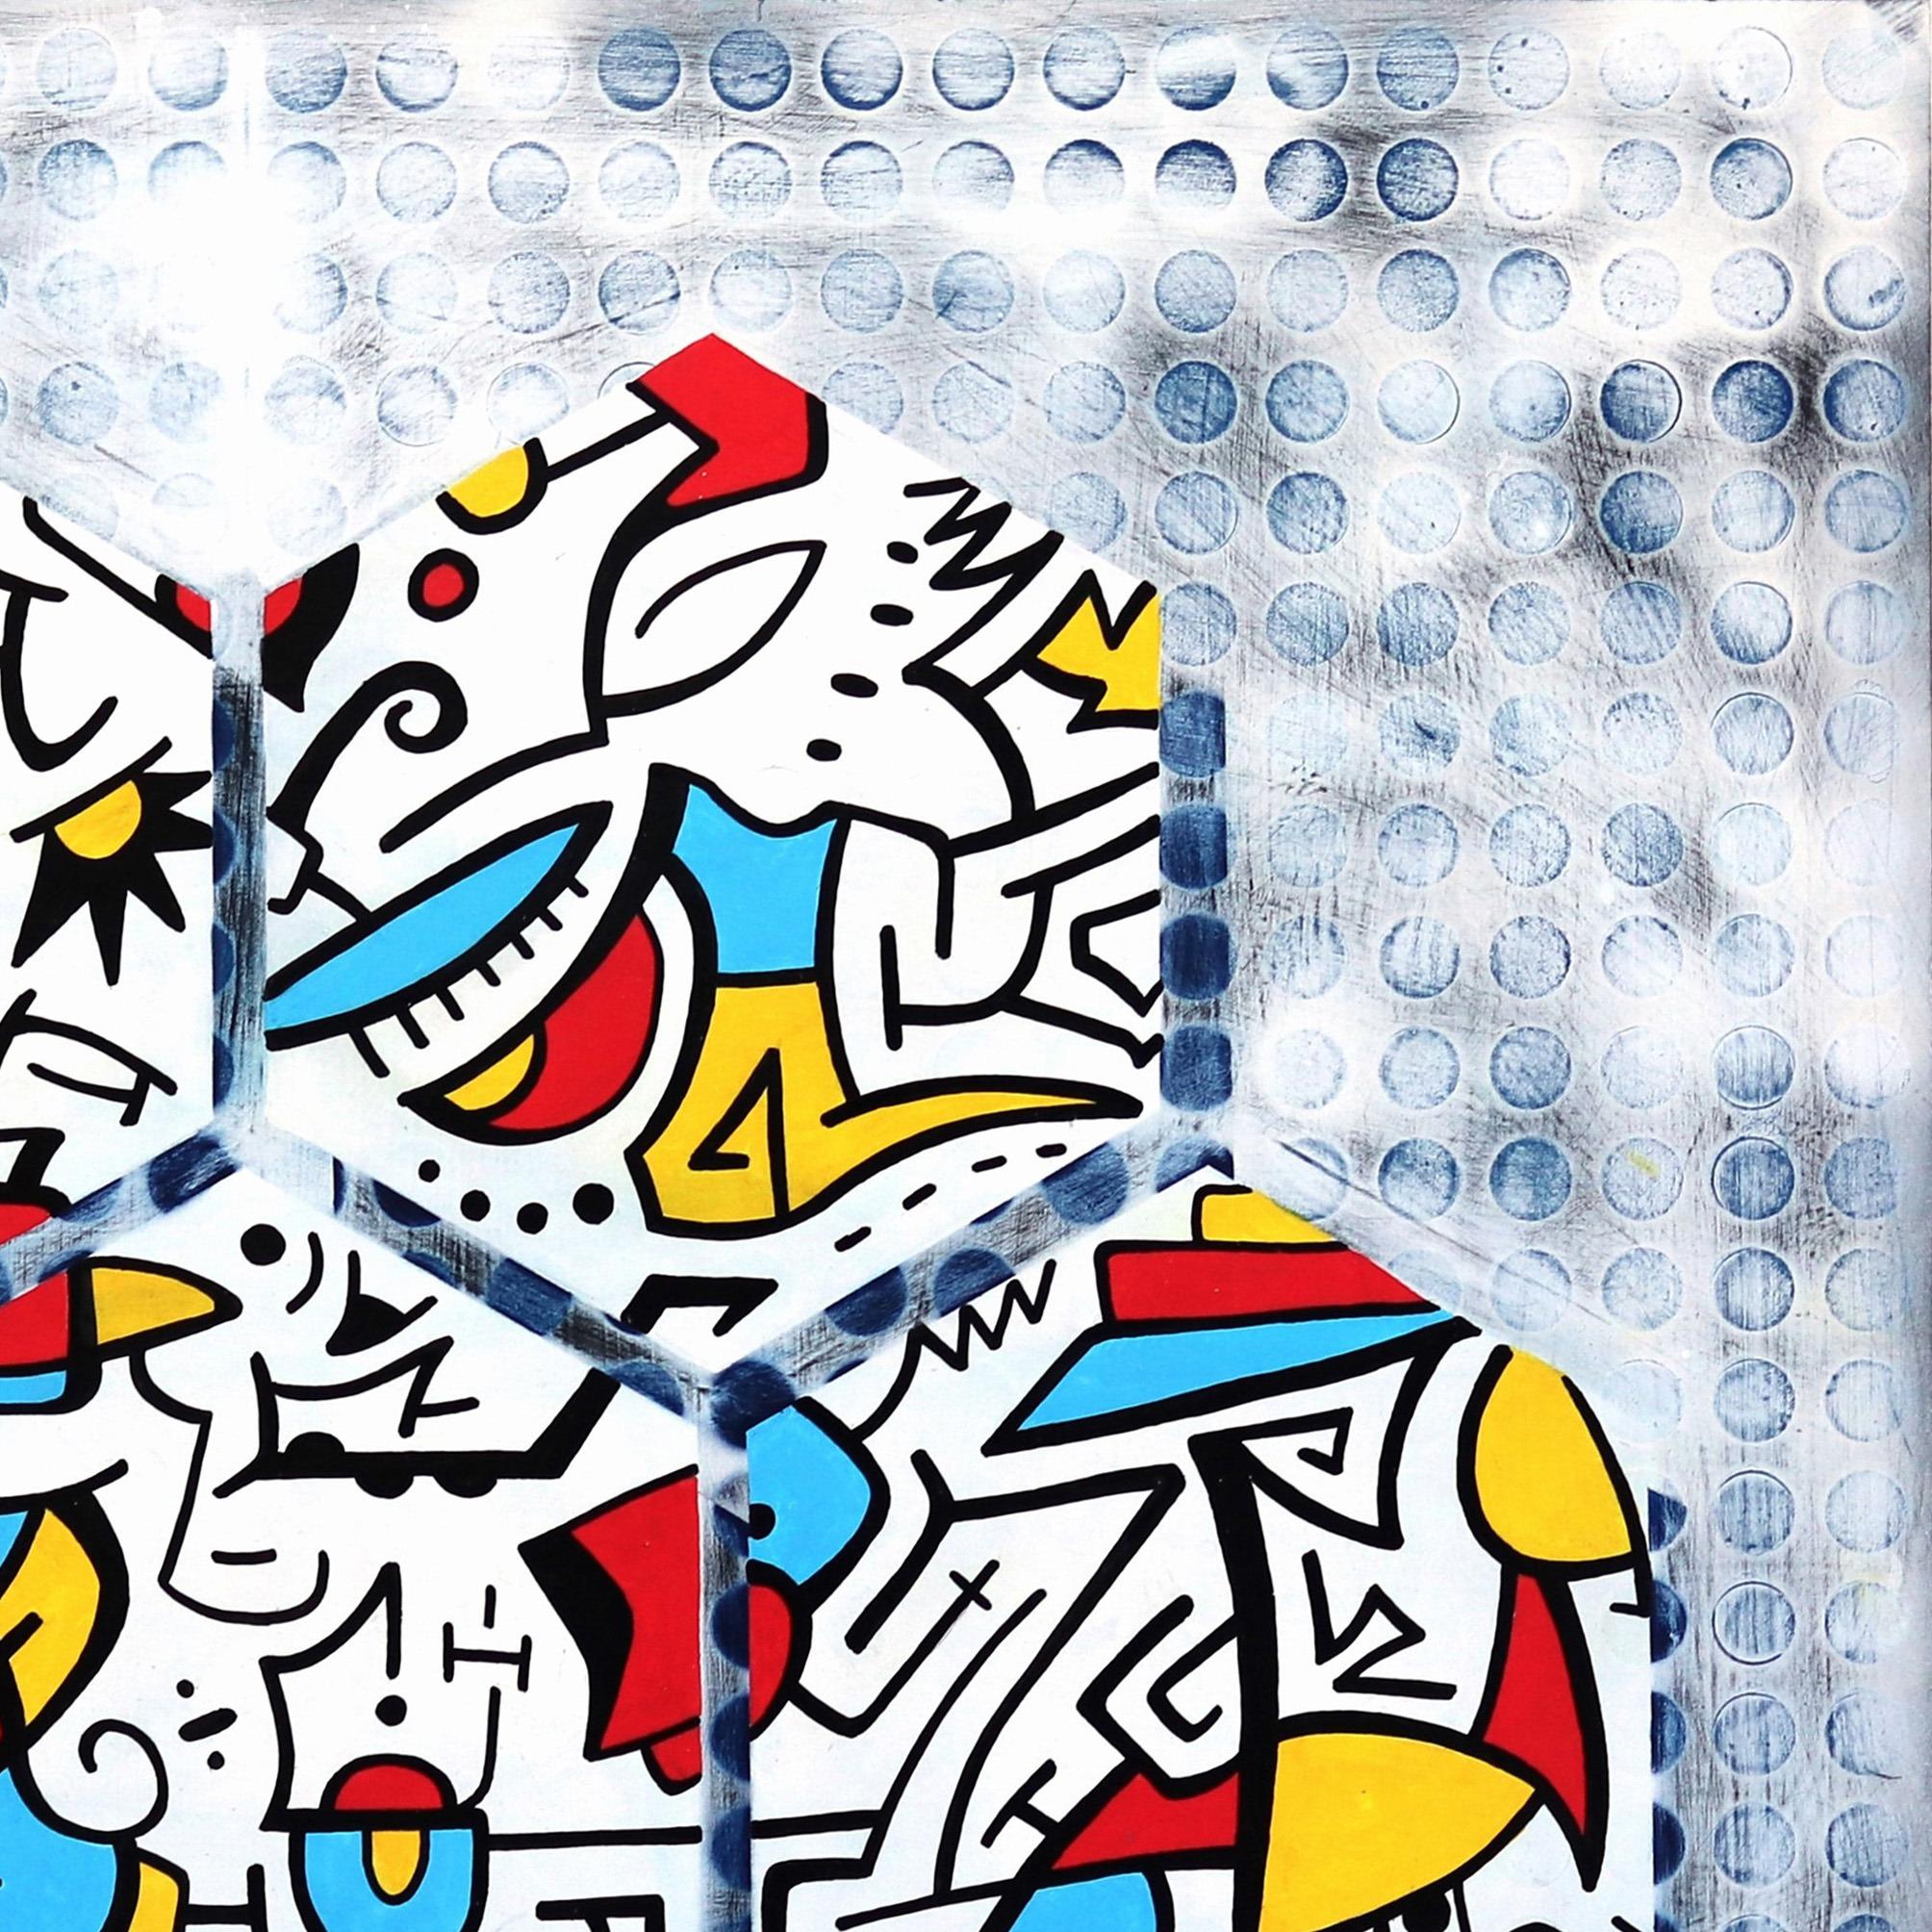 Ilan Leas verwendet graffitiähnliche Striche und kühne Winkel, die in seinen Zeichnungen zu einem faszinierenden Gleichgewicht des organisierten Chaos zusammenlaufen. Mit seinem einzigartigen künstlerischen Ansatz lässt sich Leas von seinem